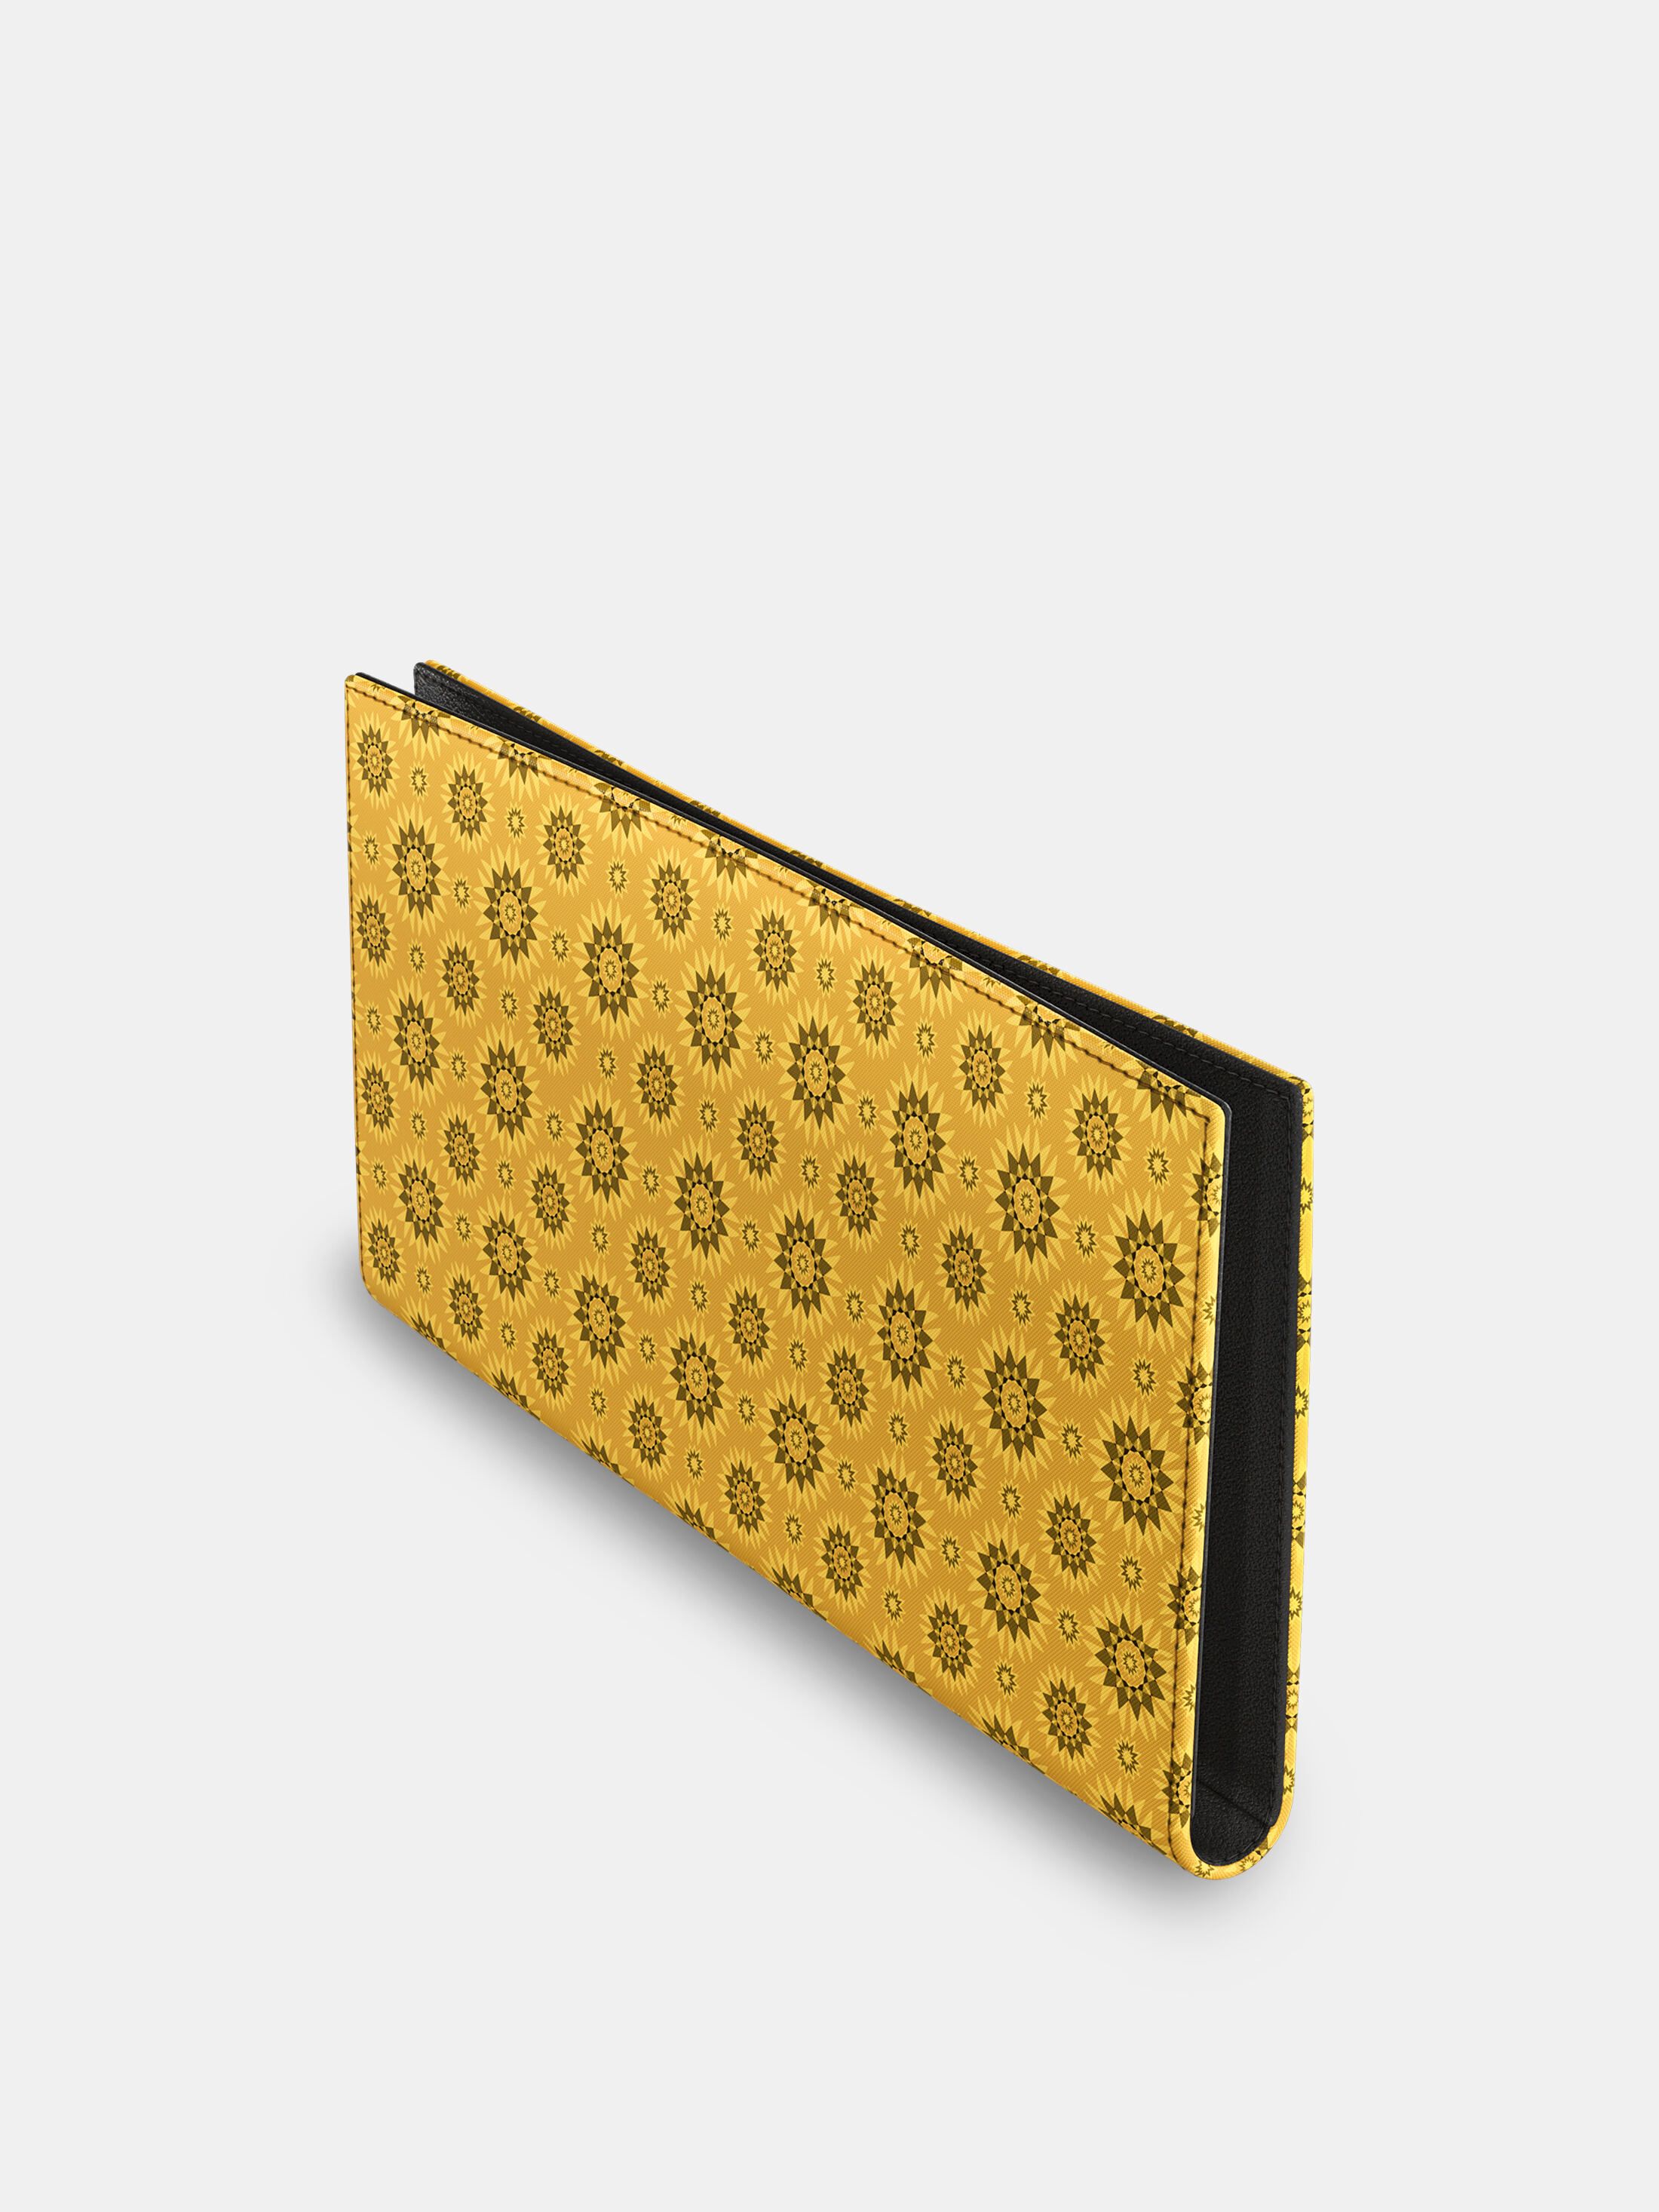 custom made travel wallet pattern